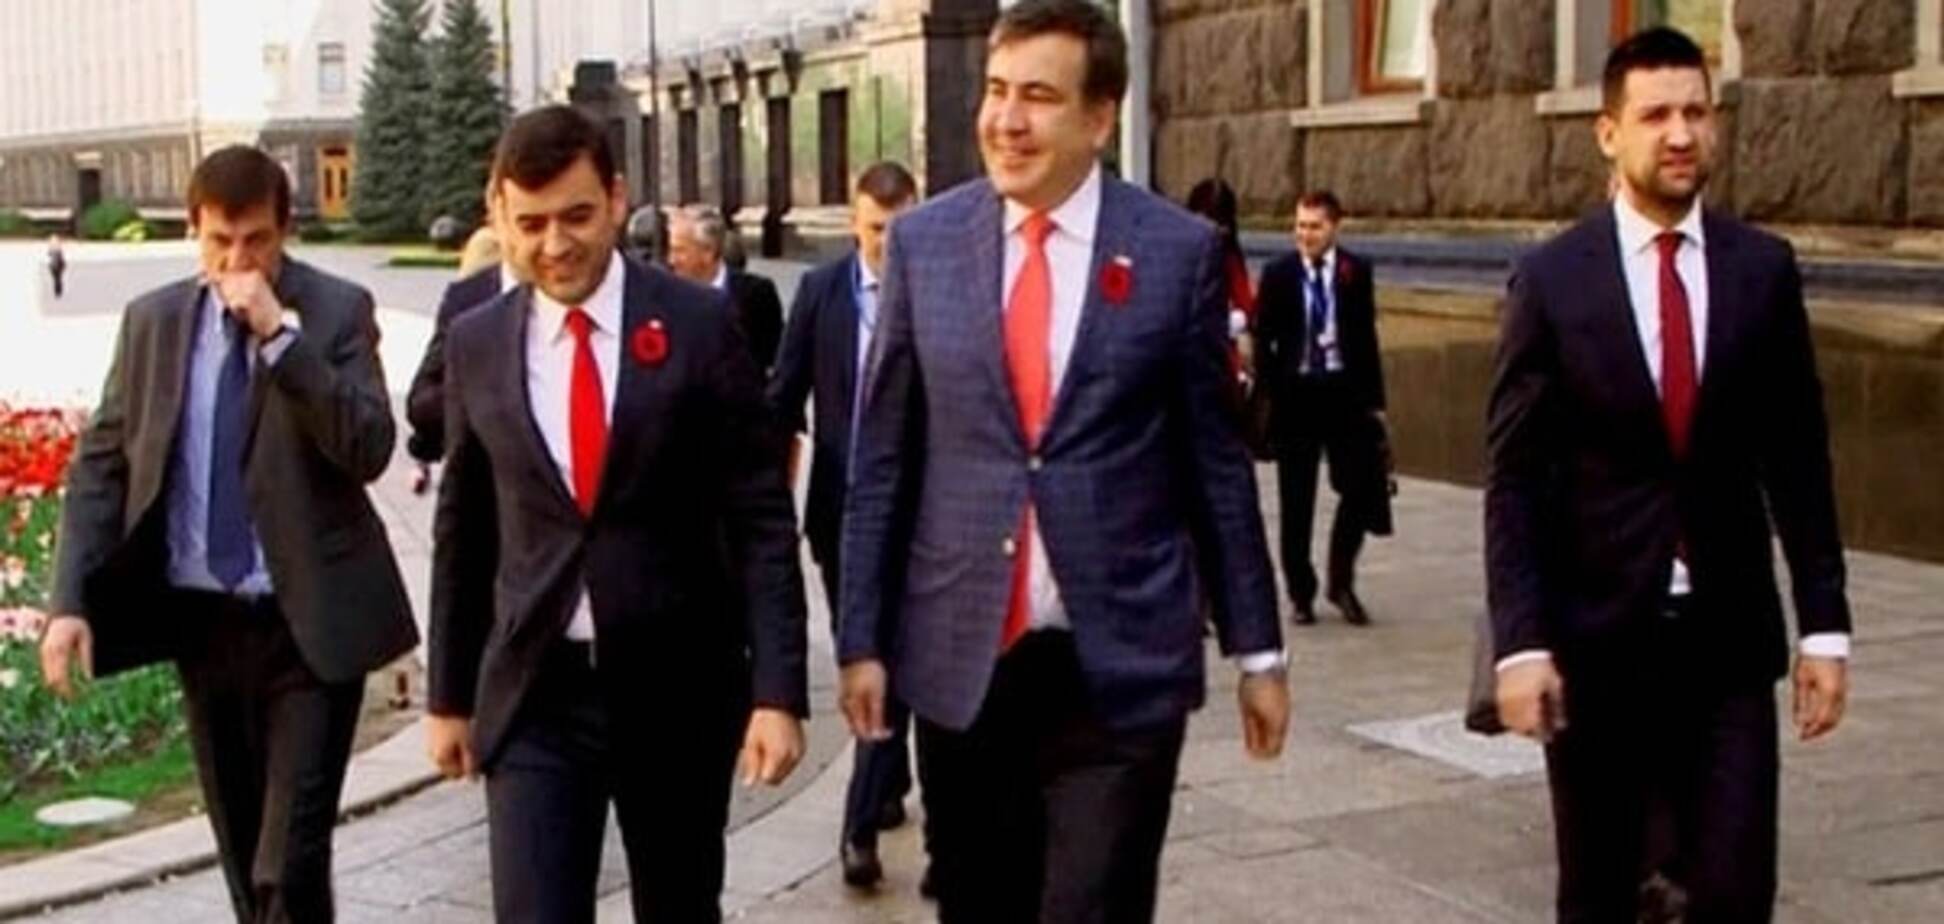 Вырос из узких штанишек: гардероб модника Саакашвили стал причиной насмешек. Фоторепортаж